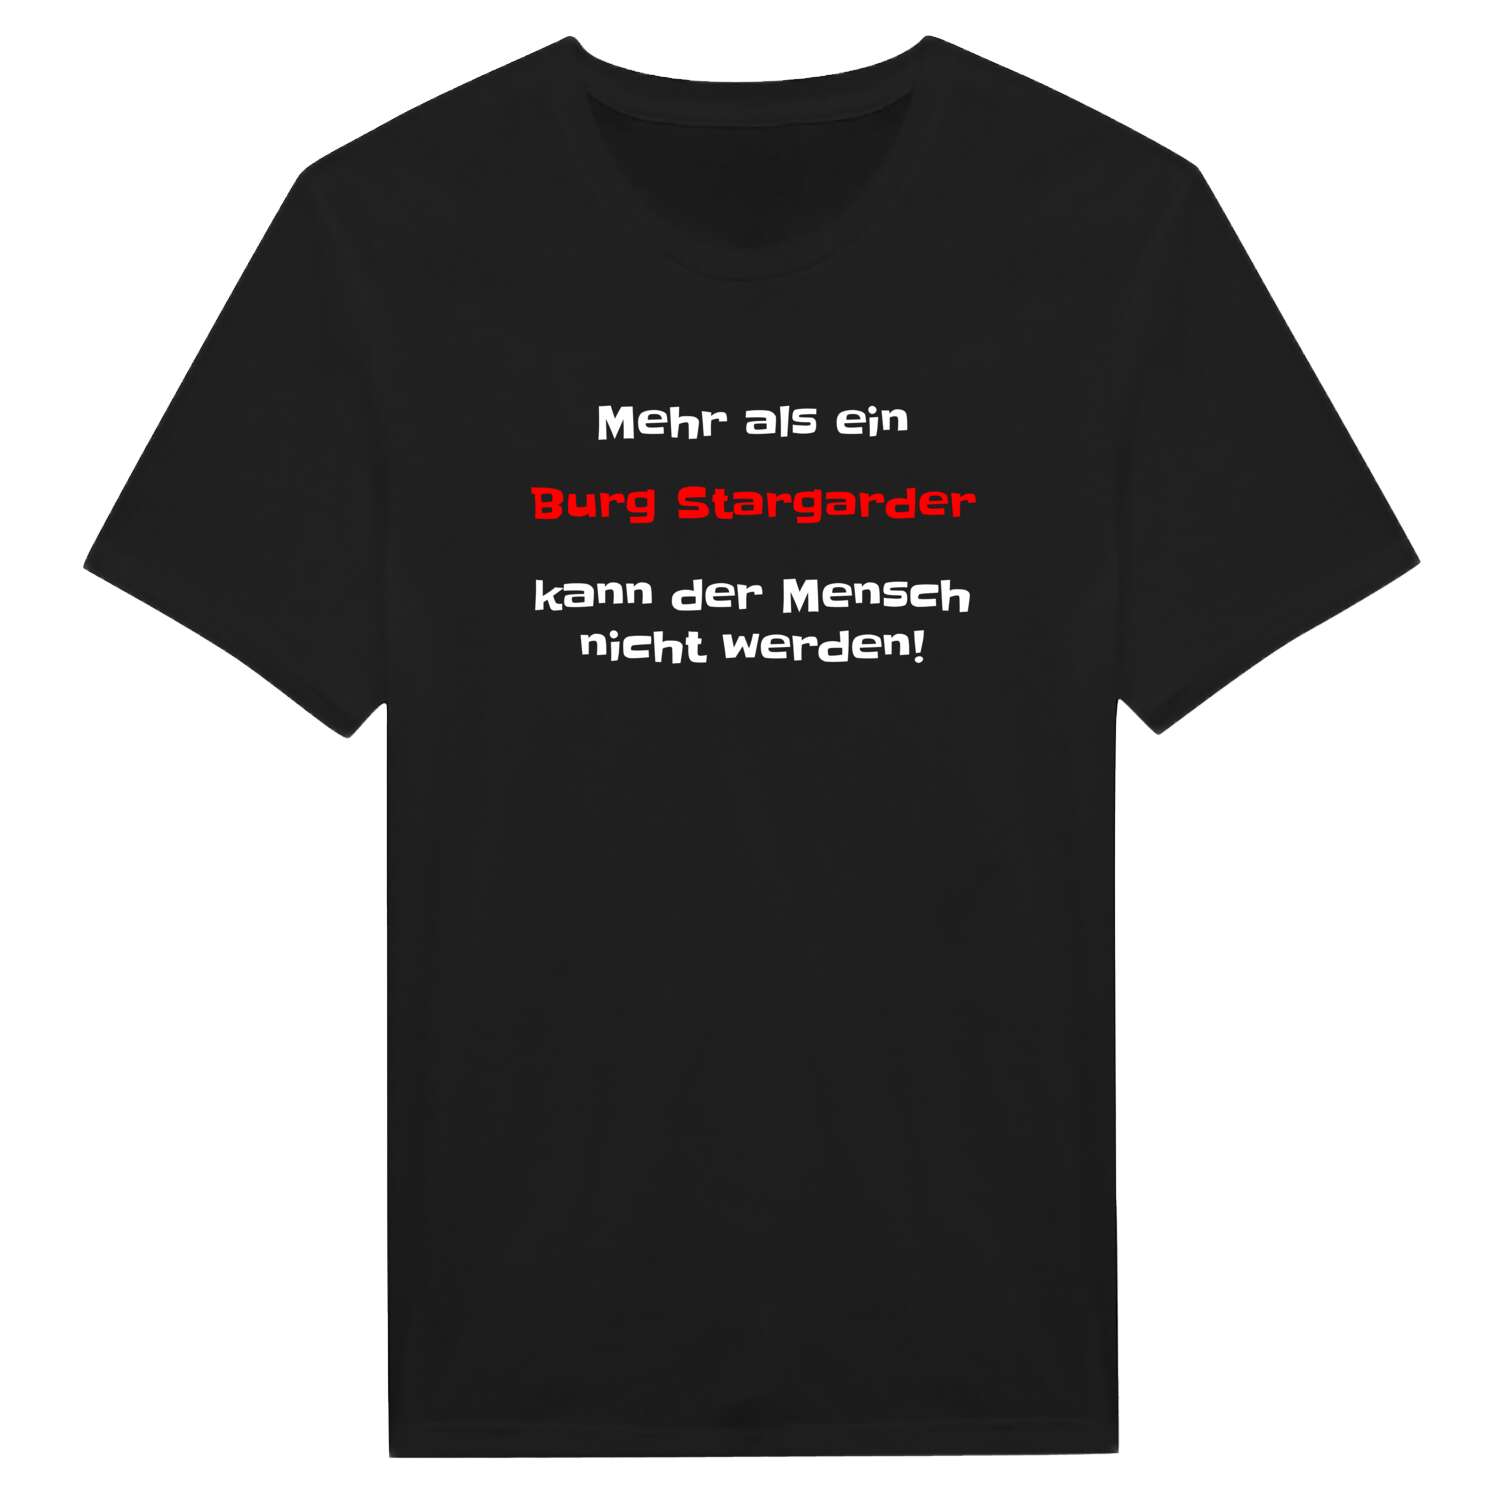 Burg Stargard T-Shirt »Mehr als ein«